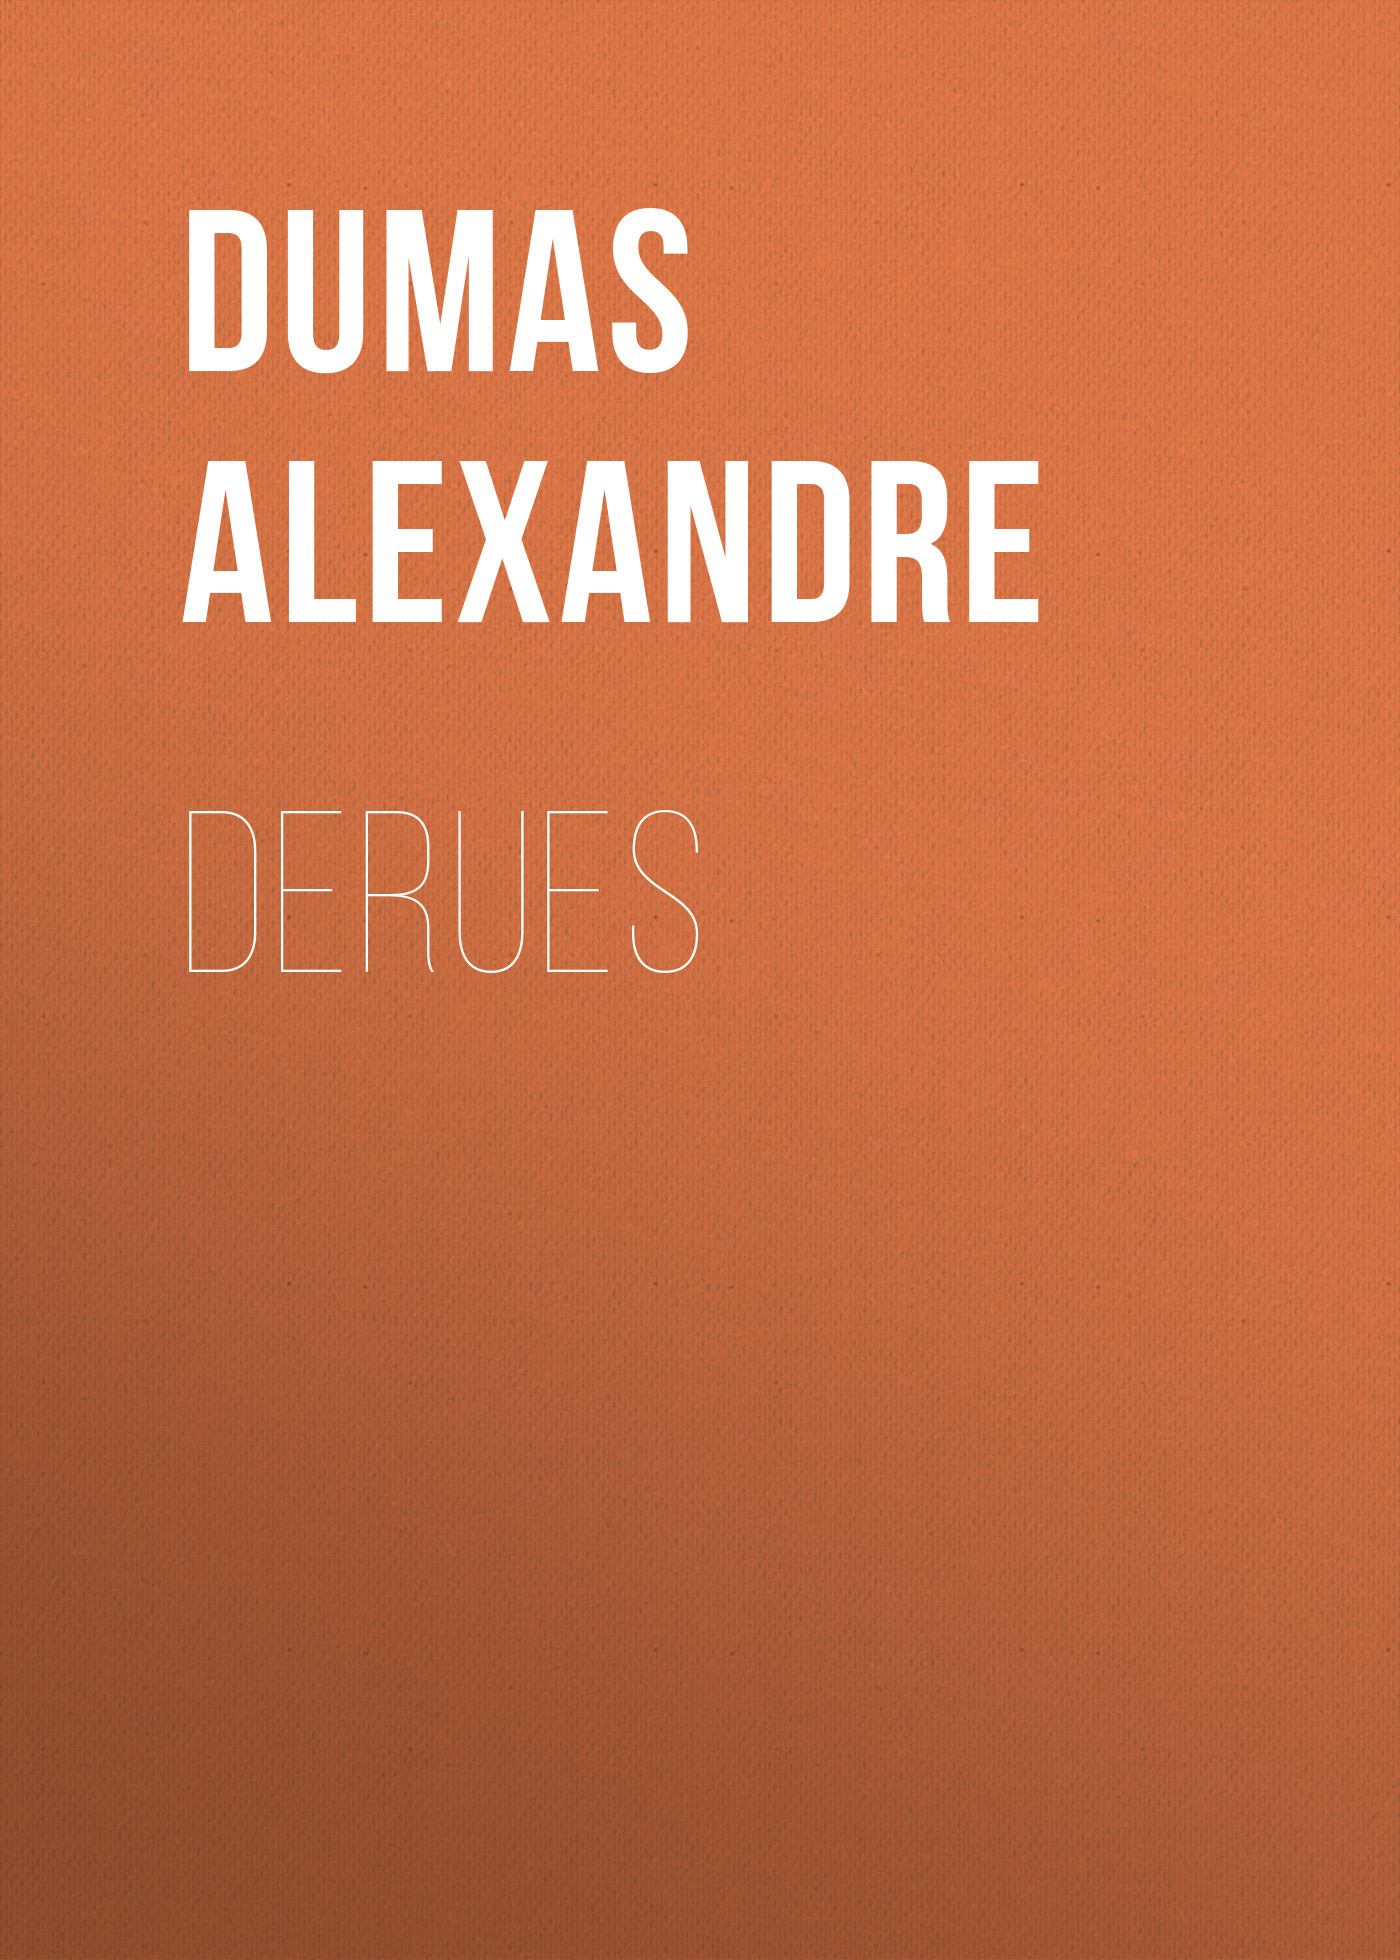 Книга Derues из серии , созданная Alexandre Dumas, может относится к жанру Литература 19 века, Зарубежная старинная литература, Зарубежная классика. Стоимость электронной книги Derues с идентификатором 25202991 составляет 0 руб.